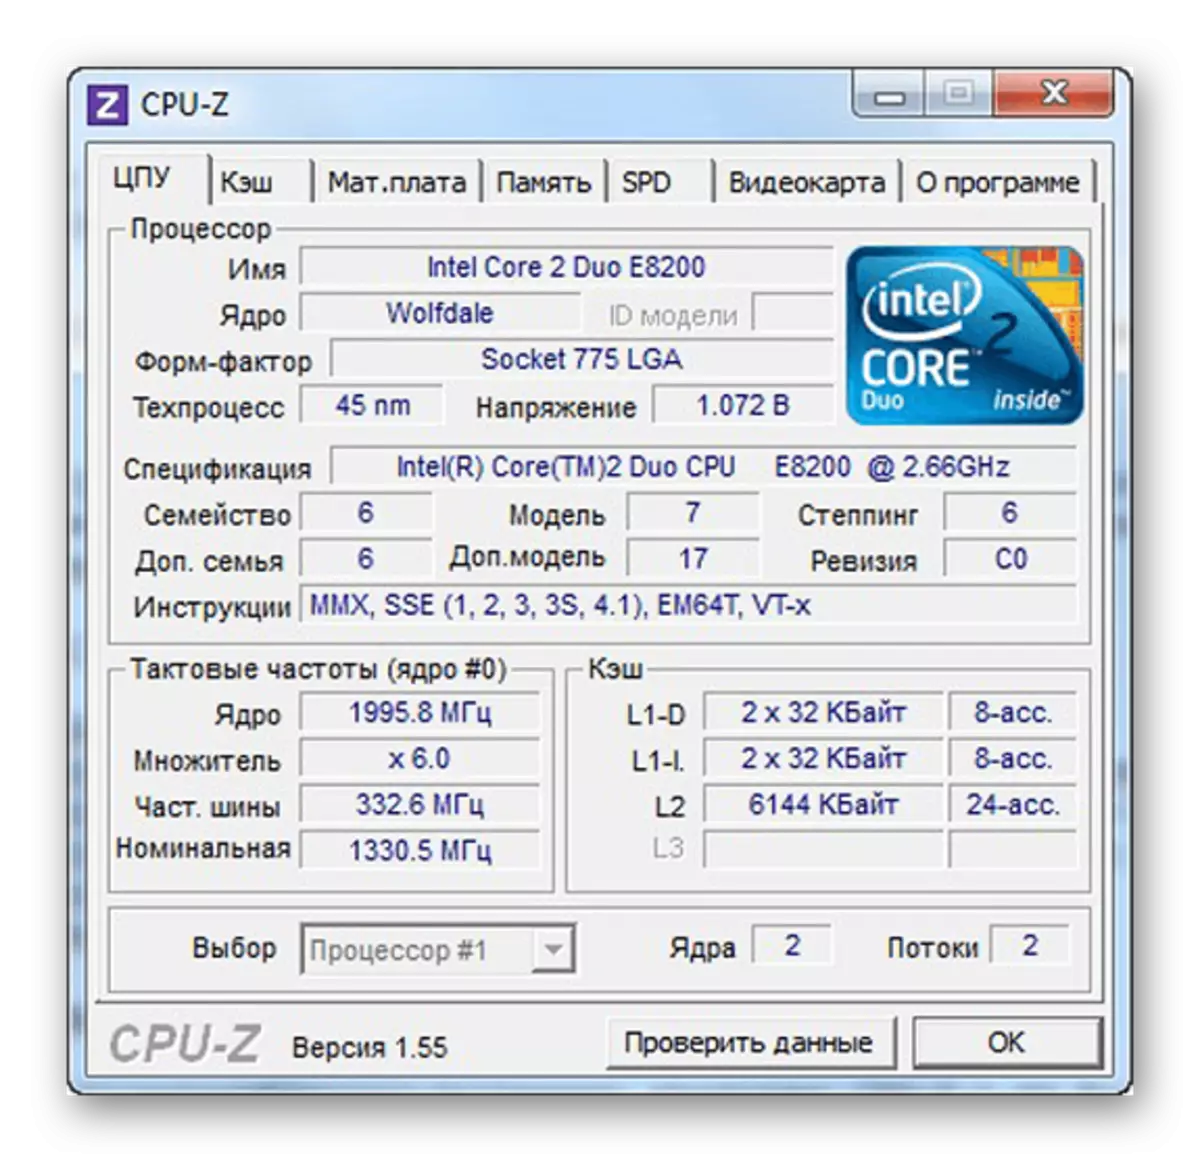 Bekerja di CPU-Z